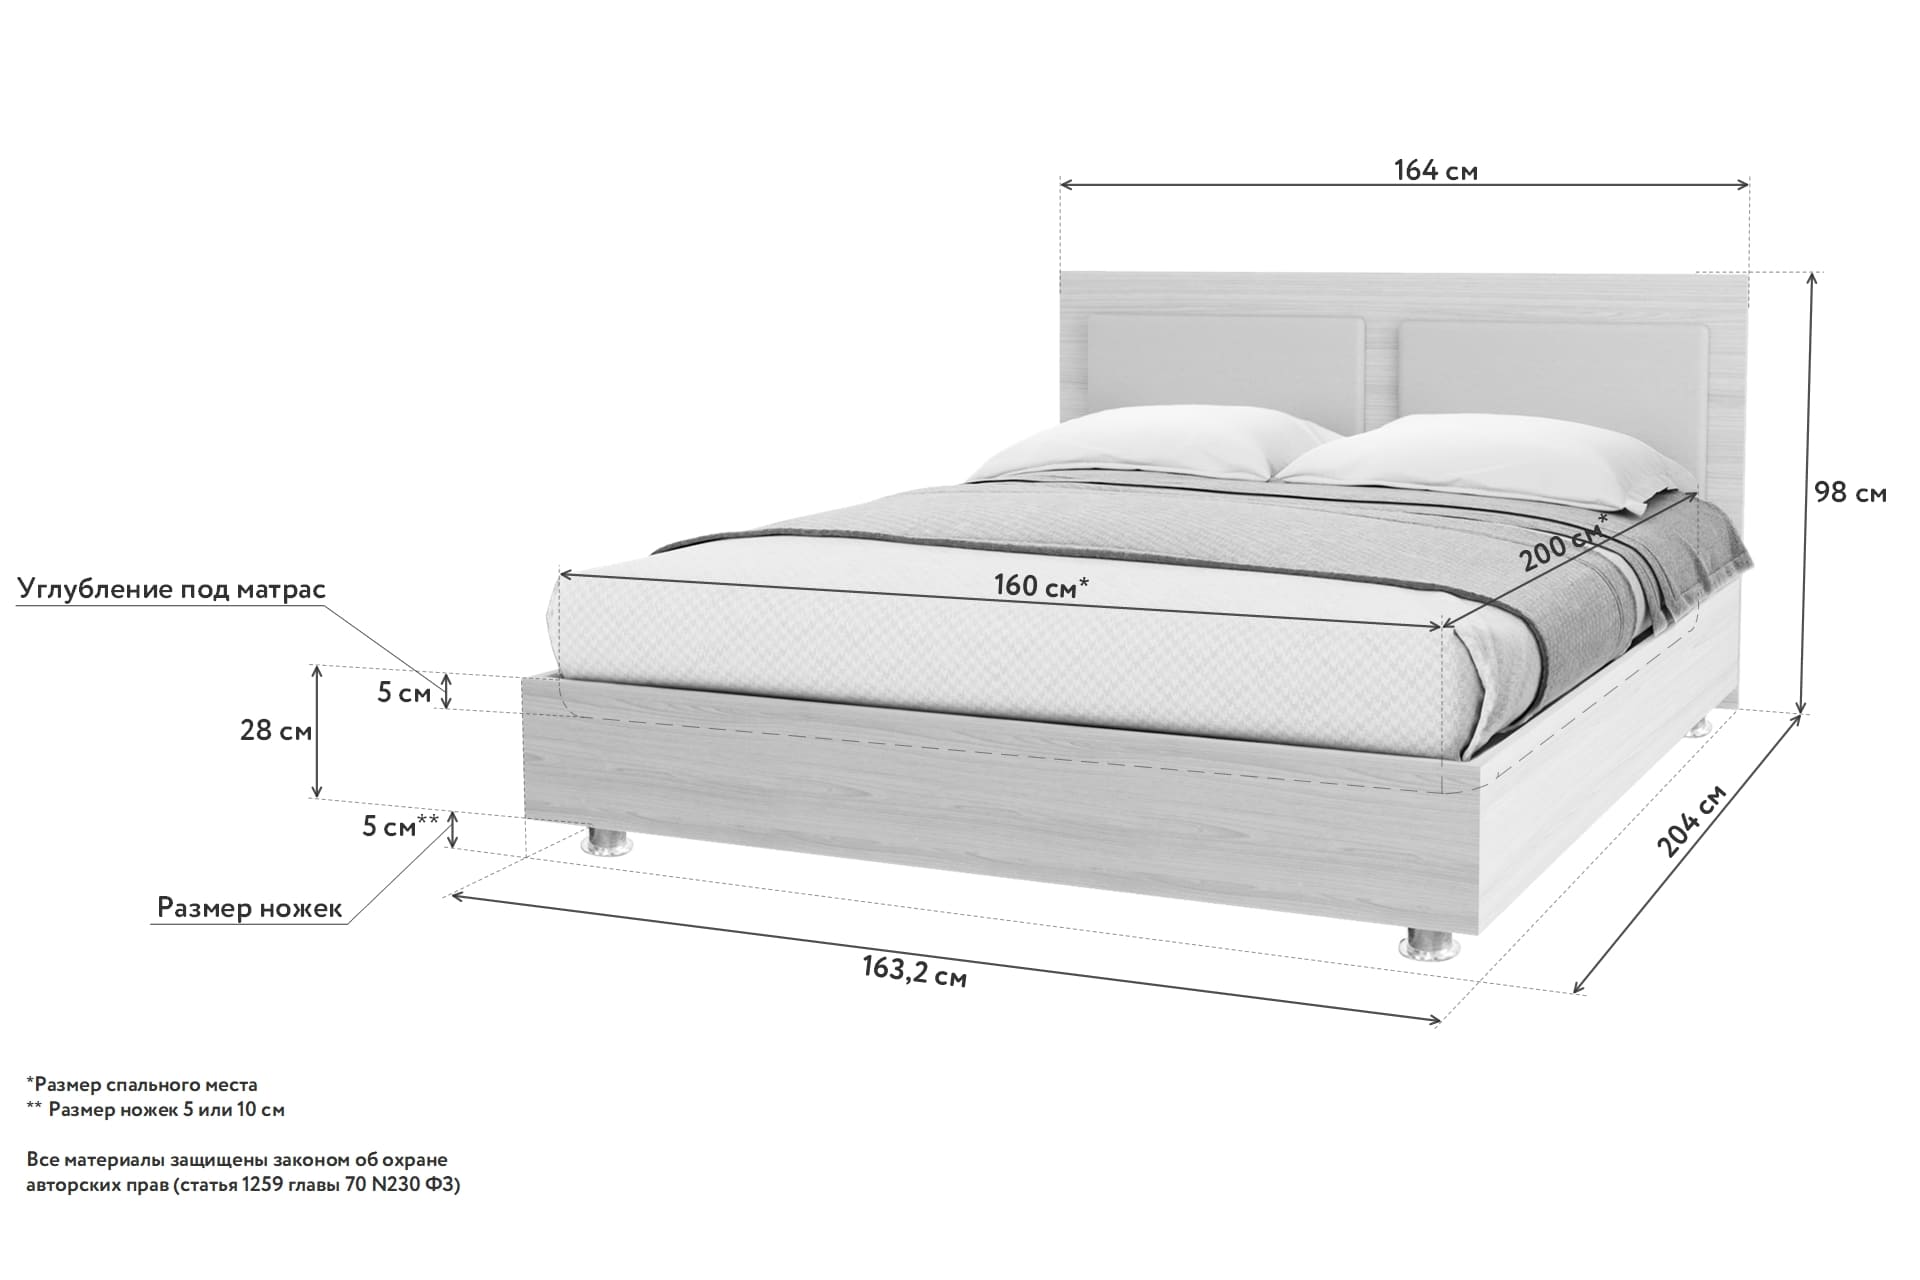 ширина и длина двуспальной кровати стандарт в россии